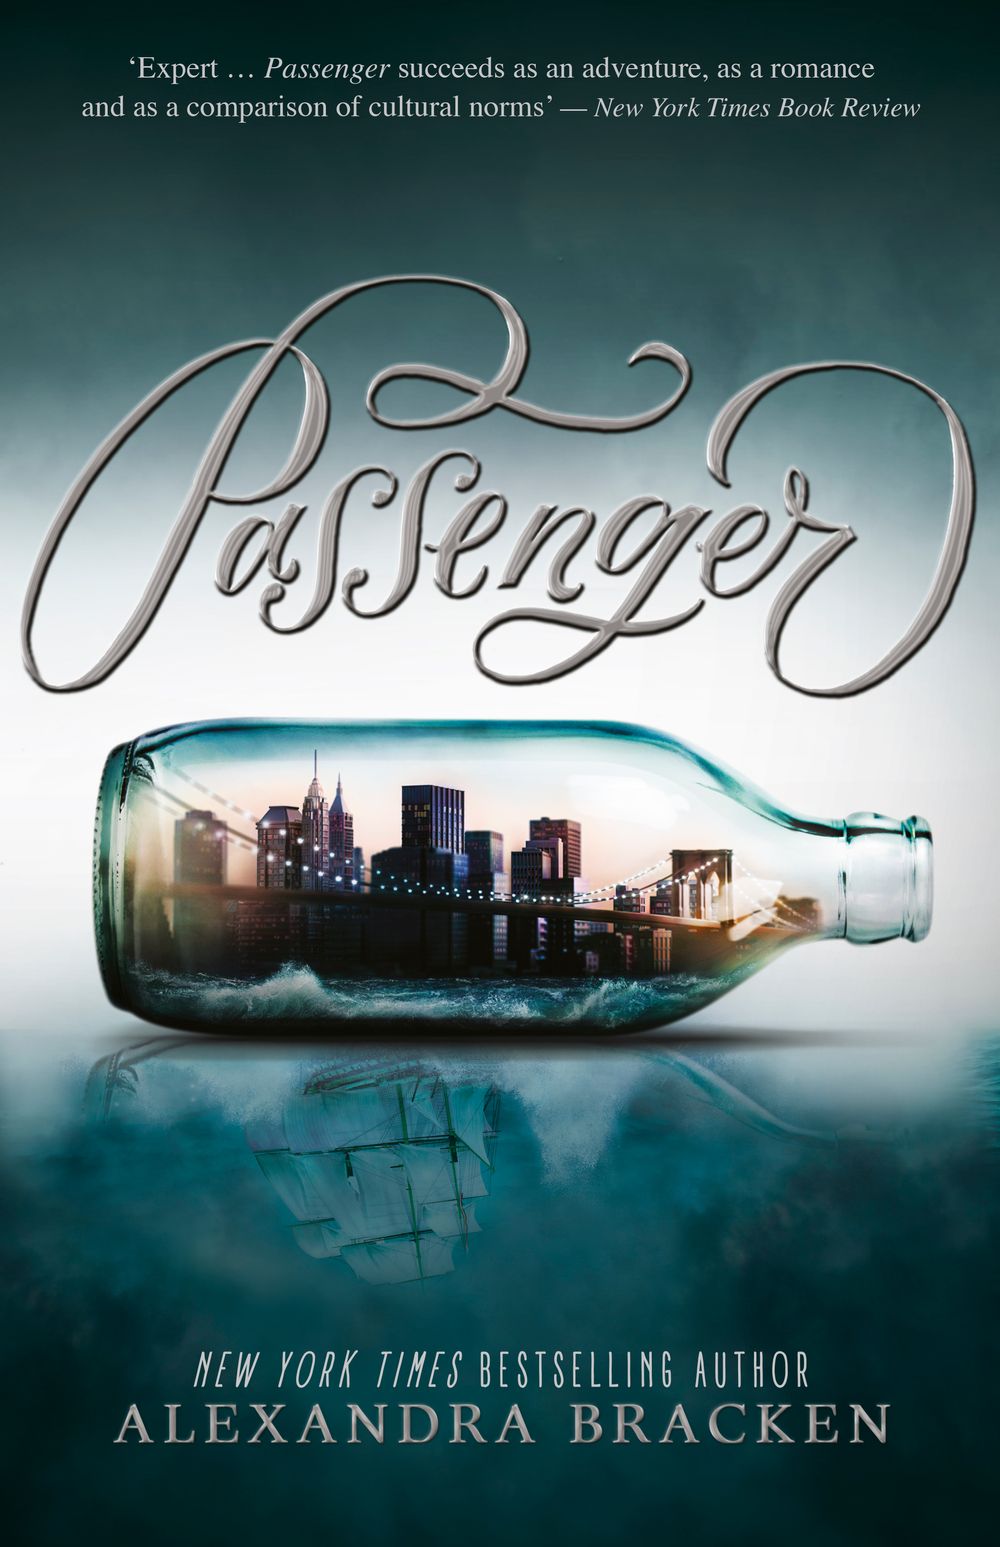 Passenger Book 1: Passenger Alexandra Bracken